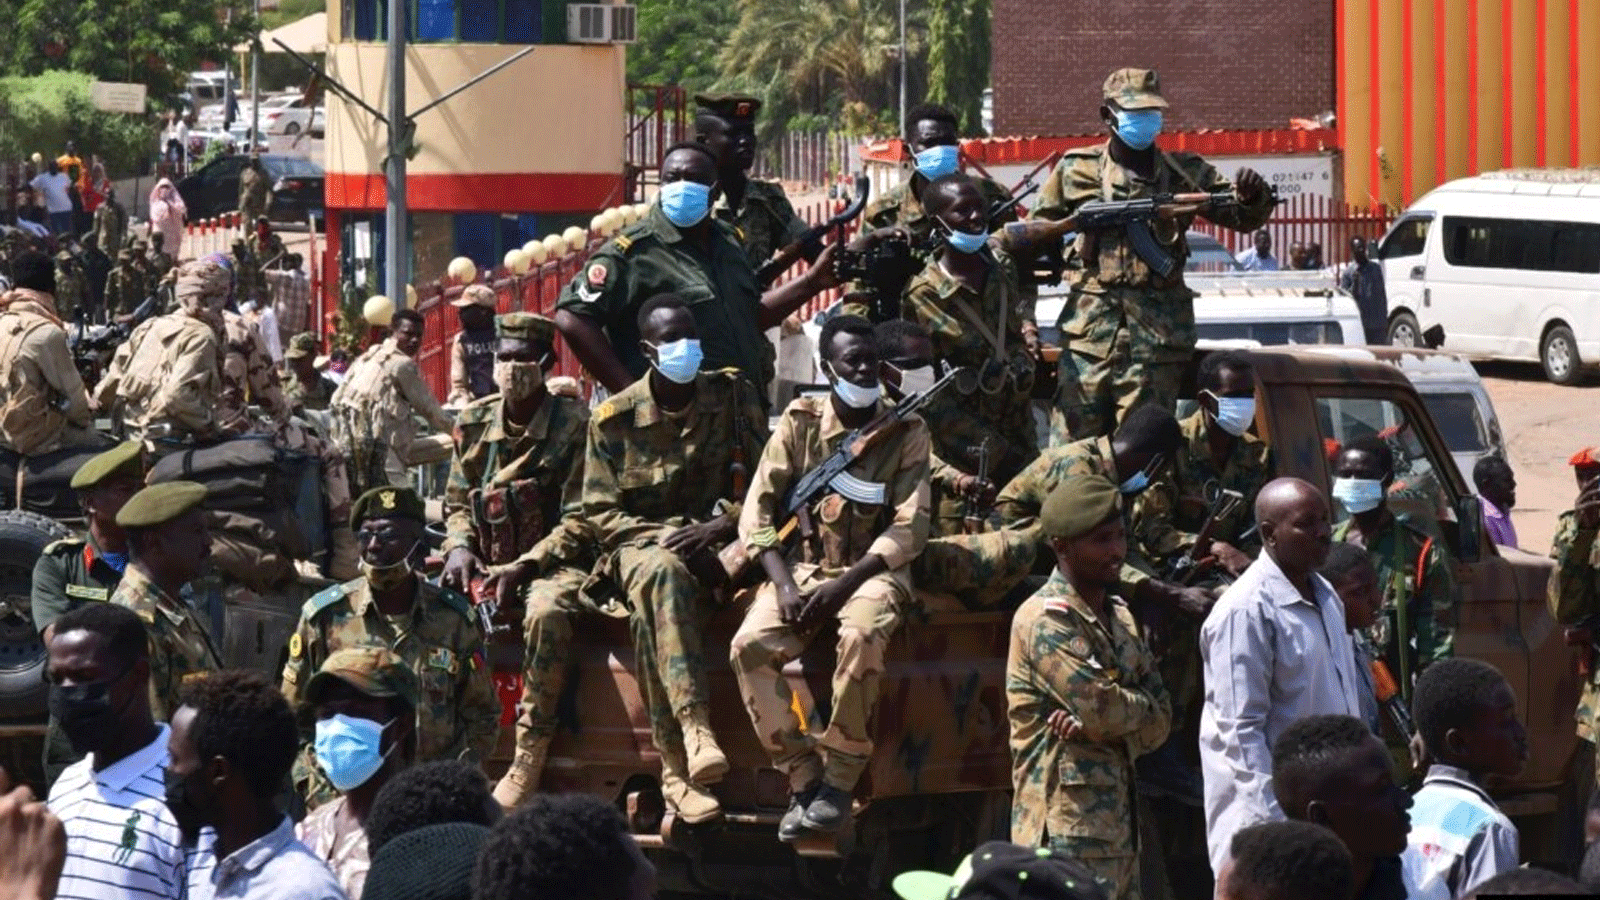 قوات الأمن السودانية تحمي مستشفى عسكريًا ومكاتب حكومية خلال الاحتجاجات ضد الانقلاب العسكري الذي أطاح بالانتقال إلى الحكم المدني، في العاصمة التوأم أم درمان.